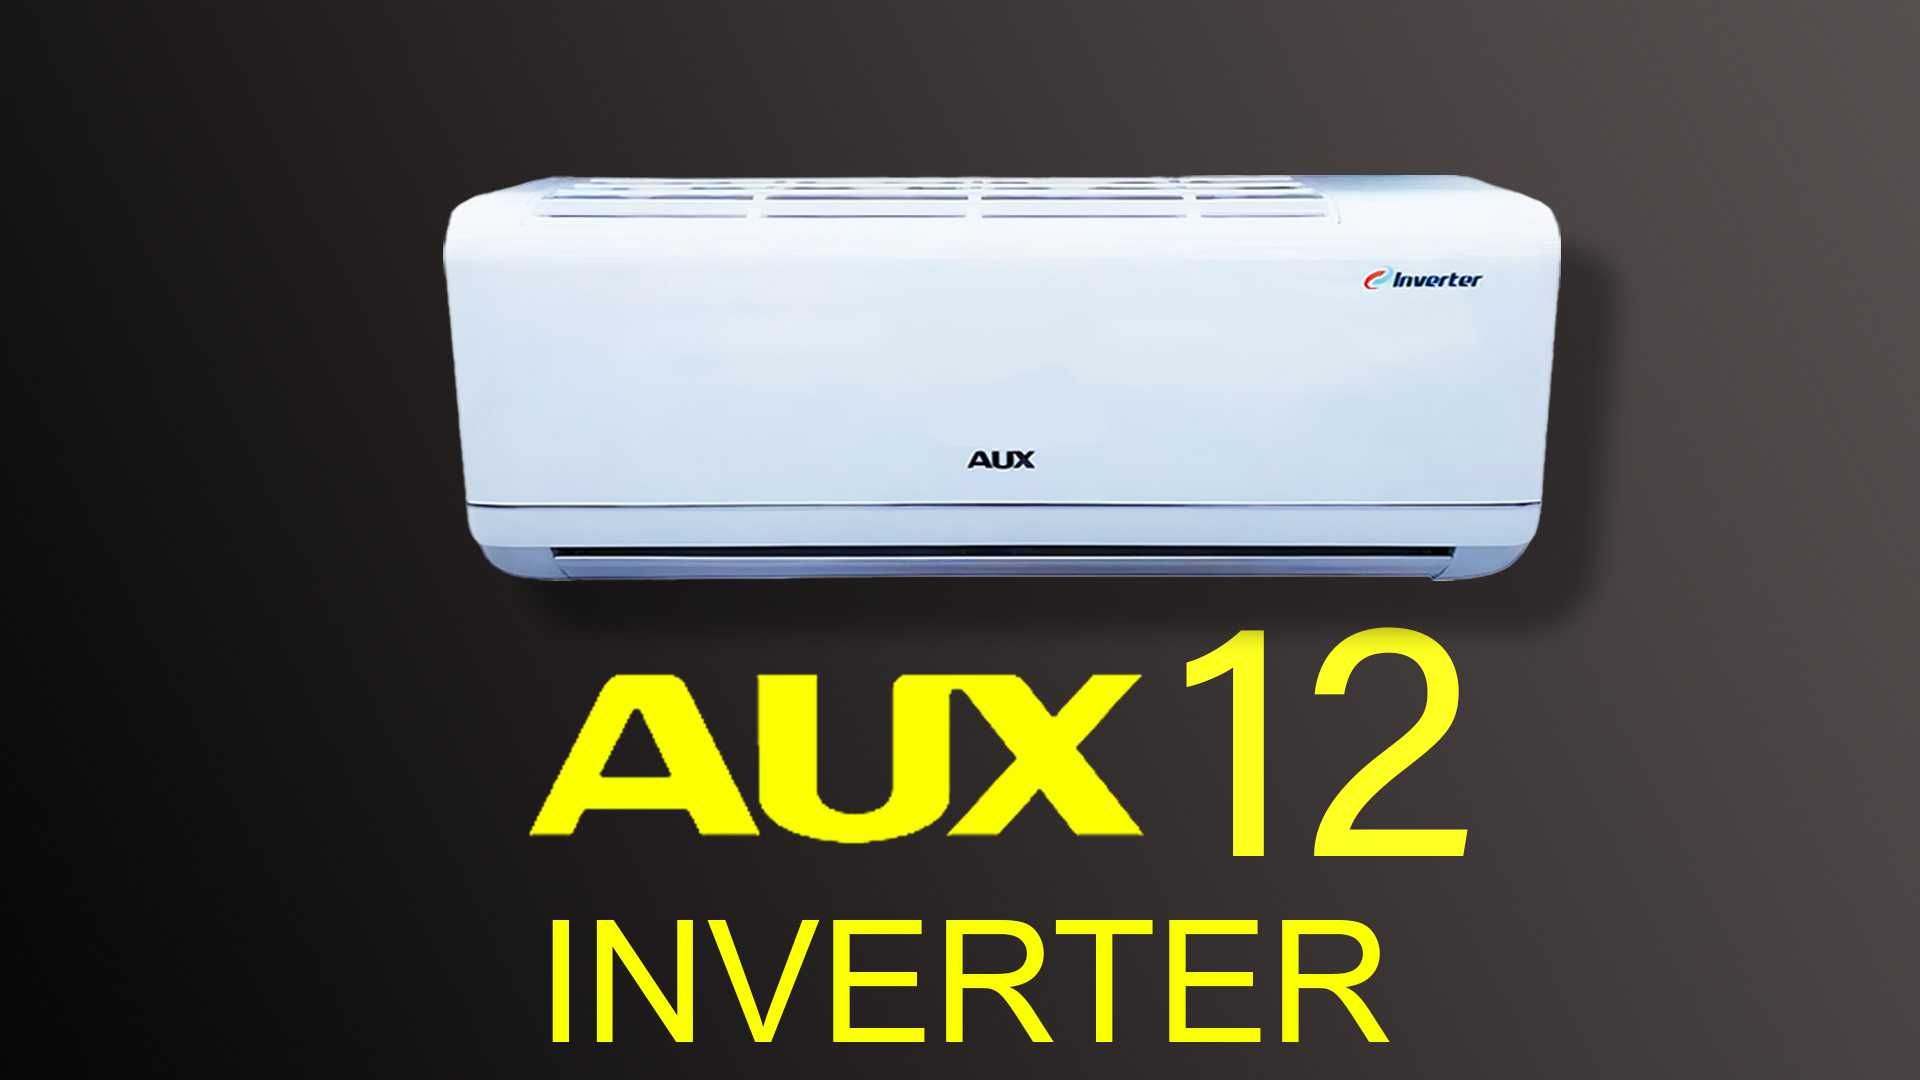 Кондиционер AUX 12 inverter акция + доставка бесплатно